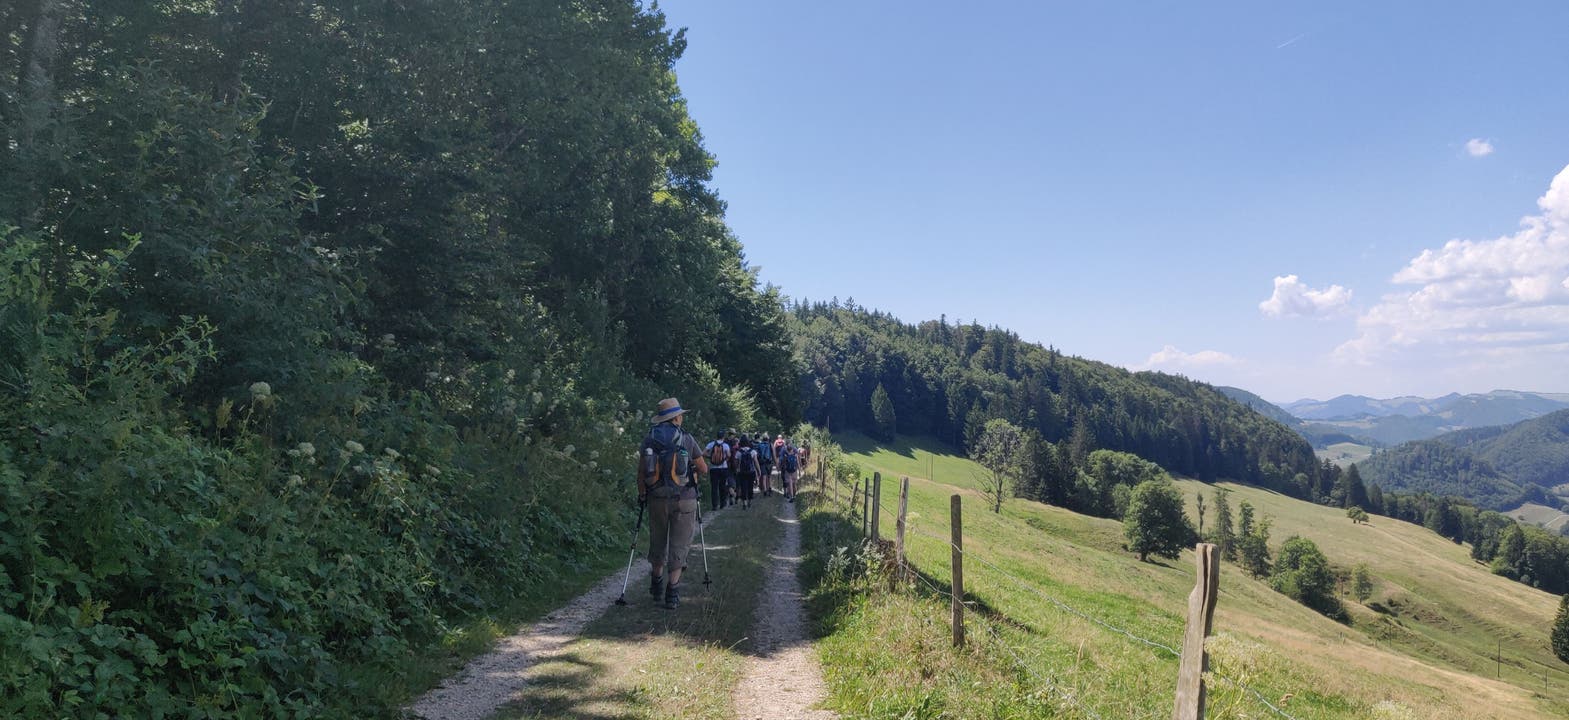 Schliesslich tritt die Wandergruppe das letzte Stück der Strecke bis nach Langenbruck an.